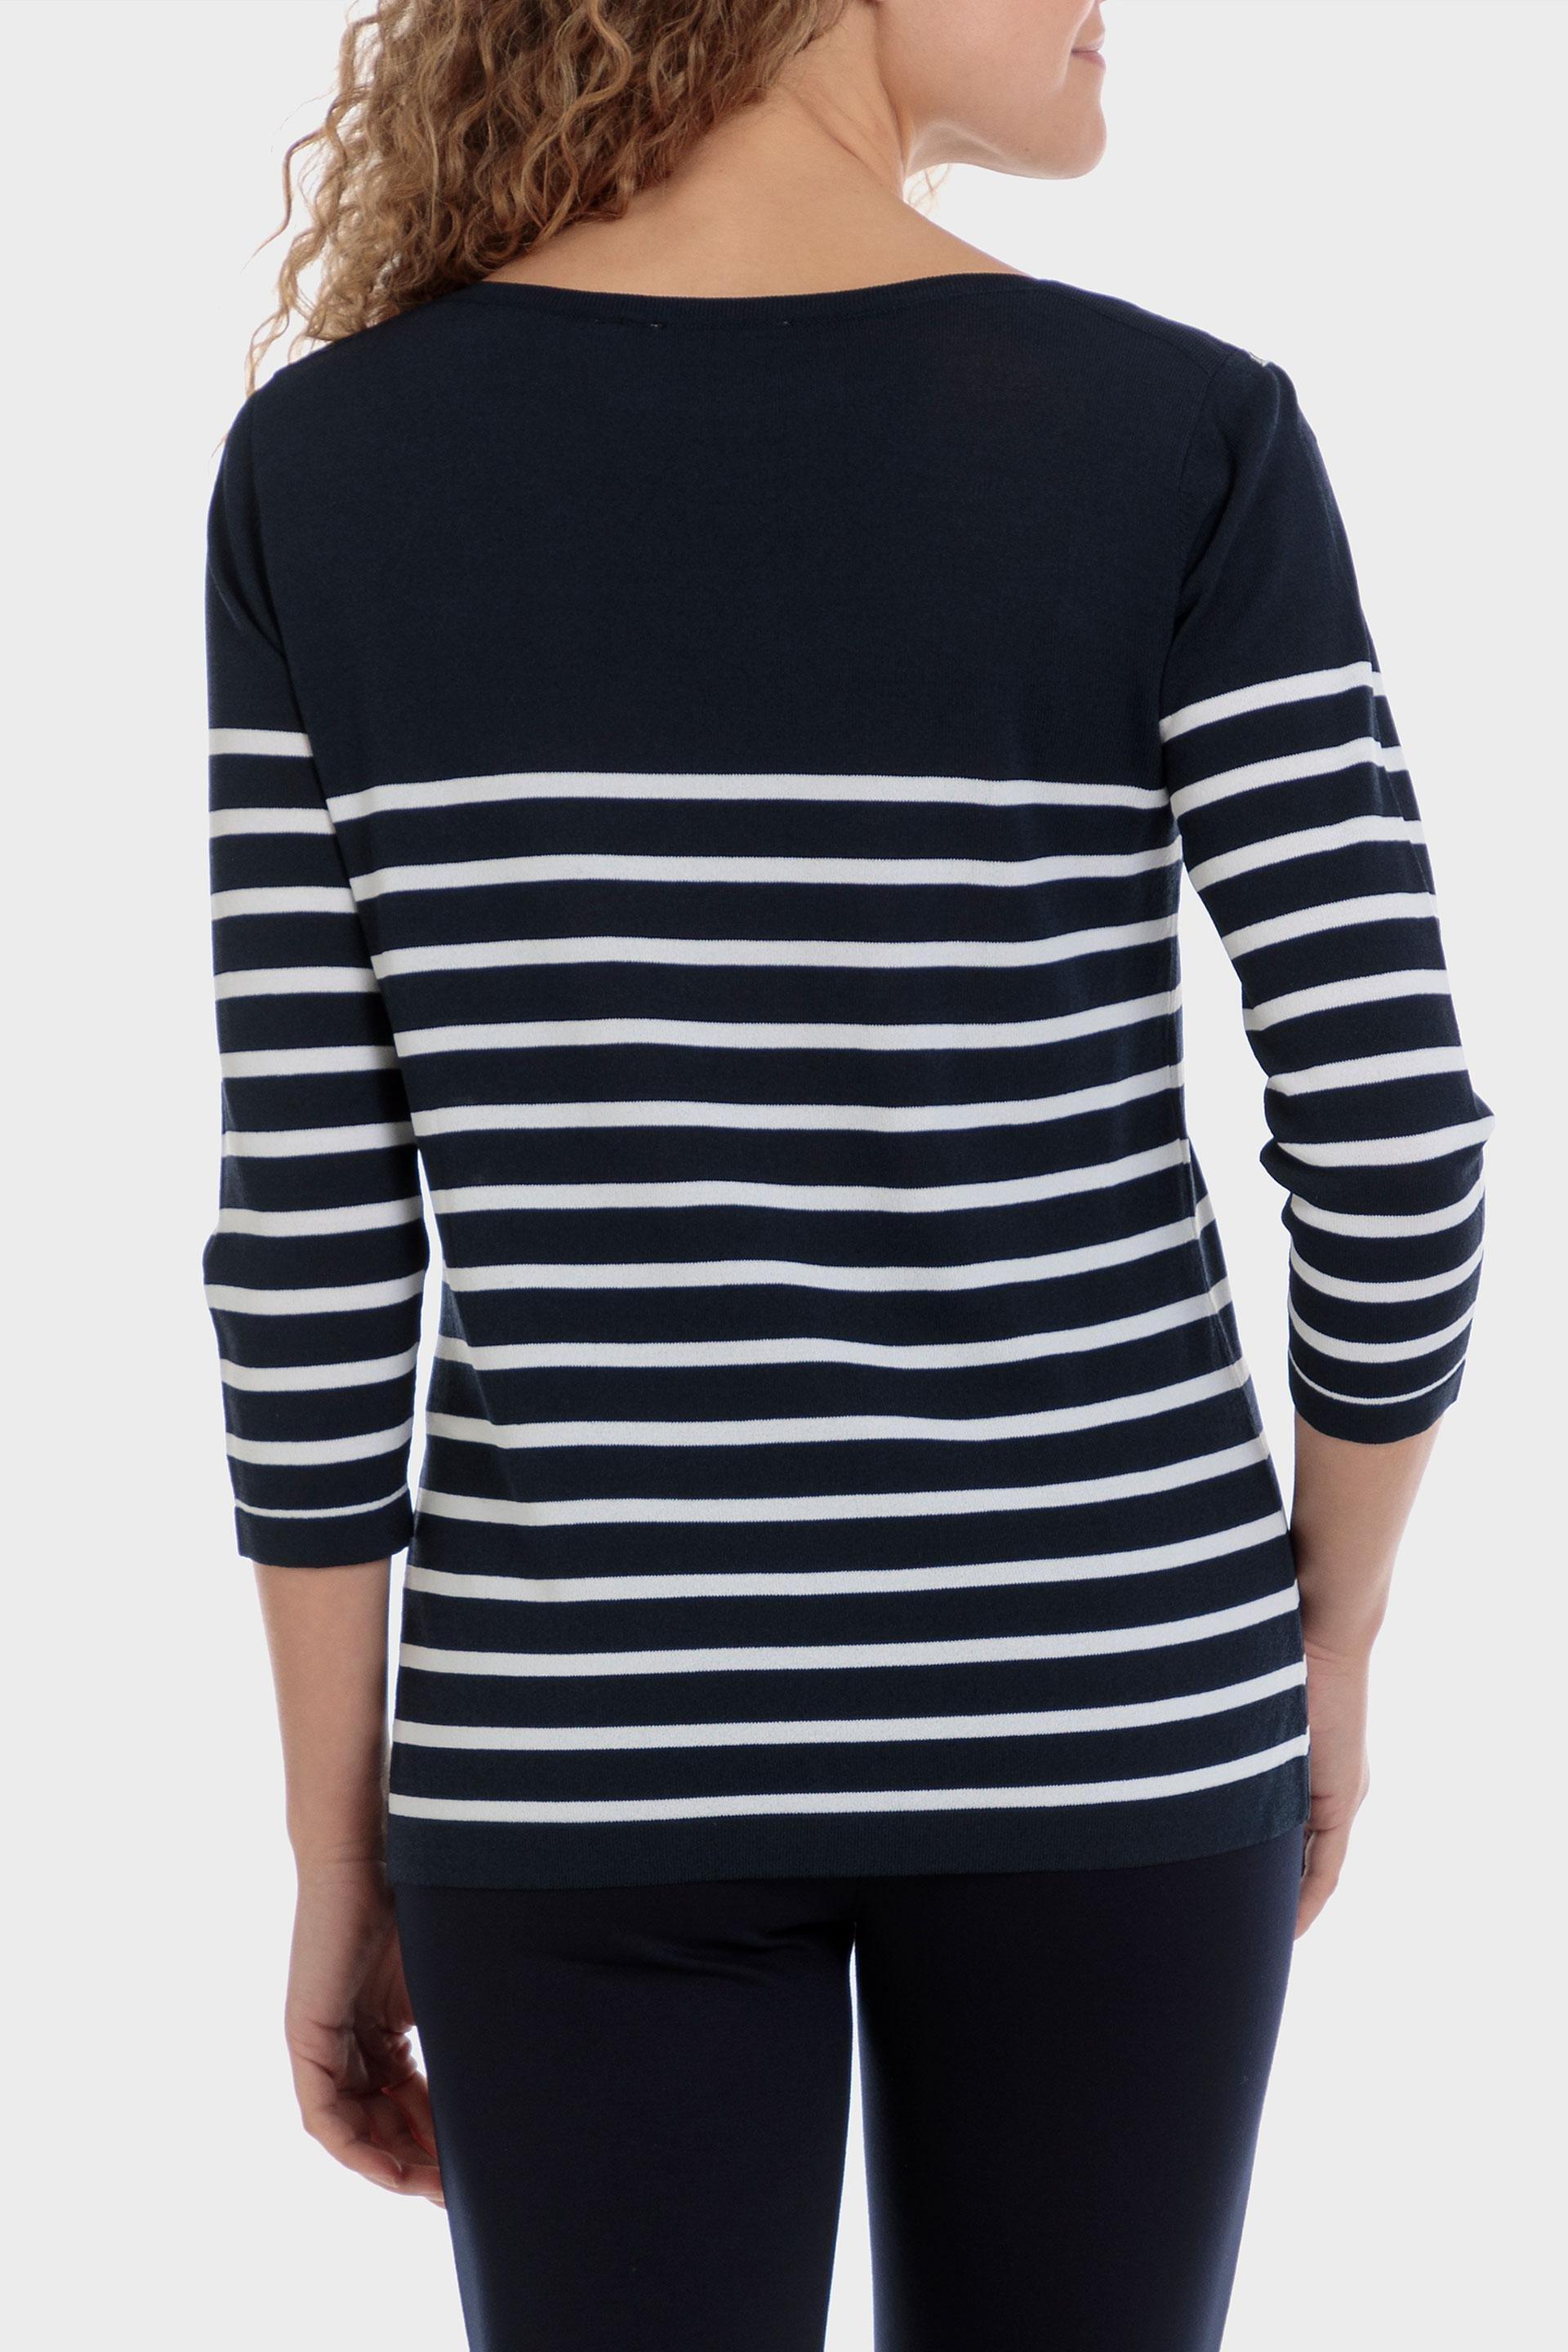 Punt Roma - Multicolour Striped Sweater